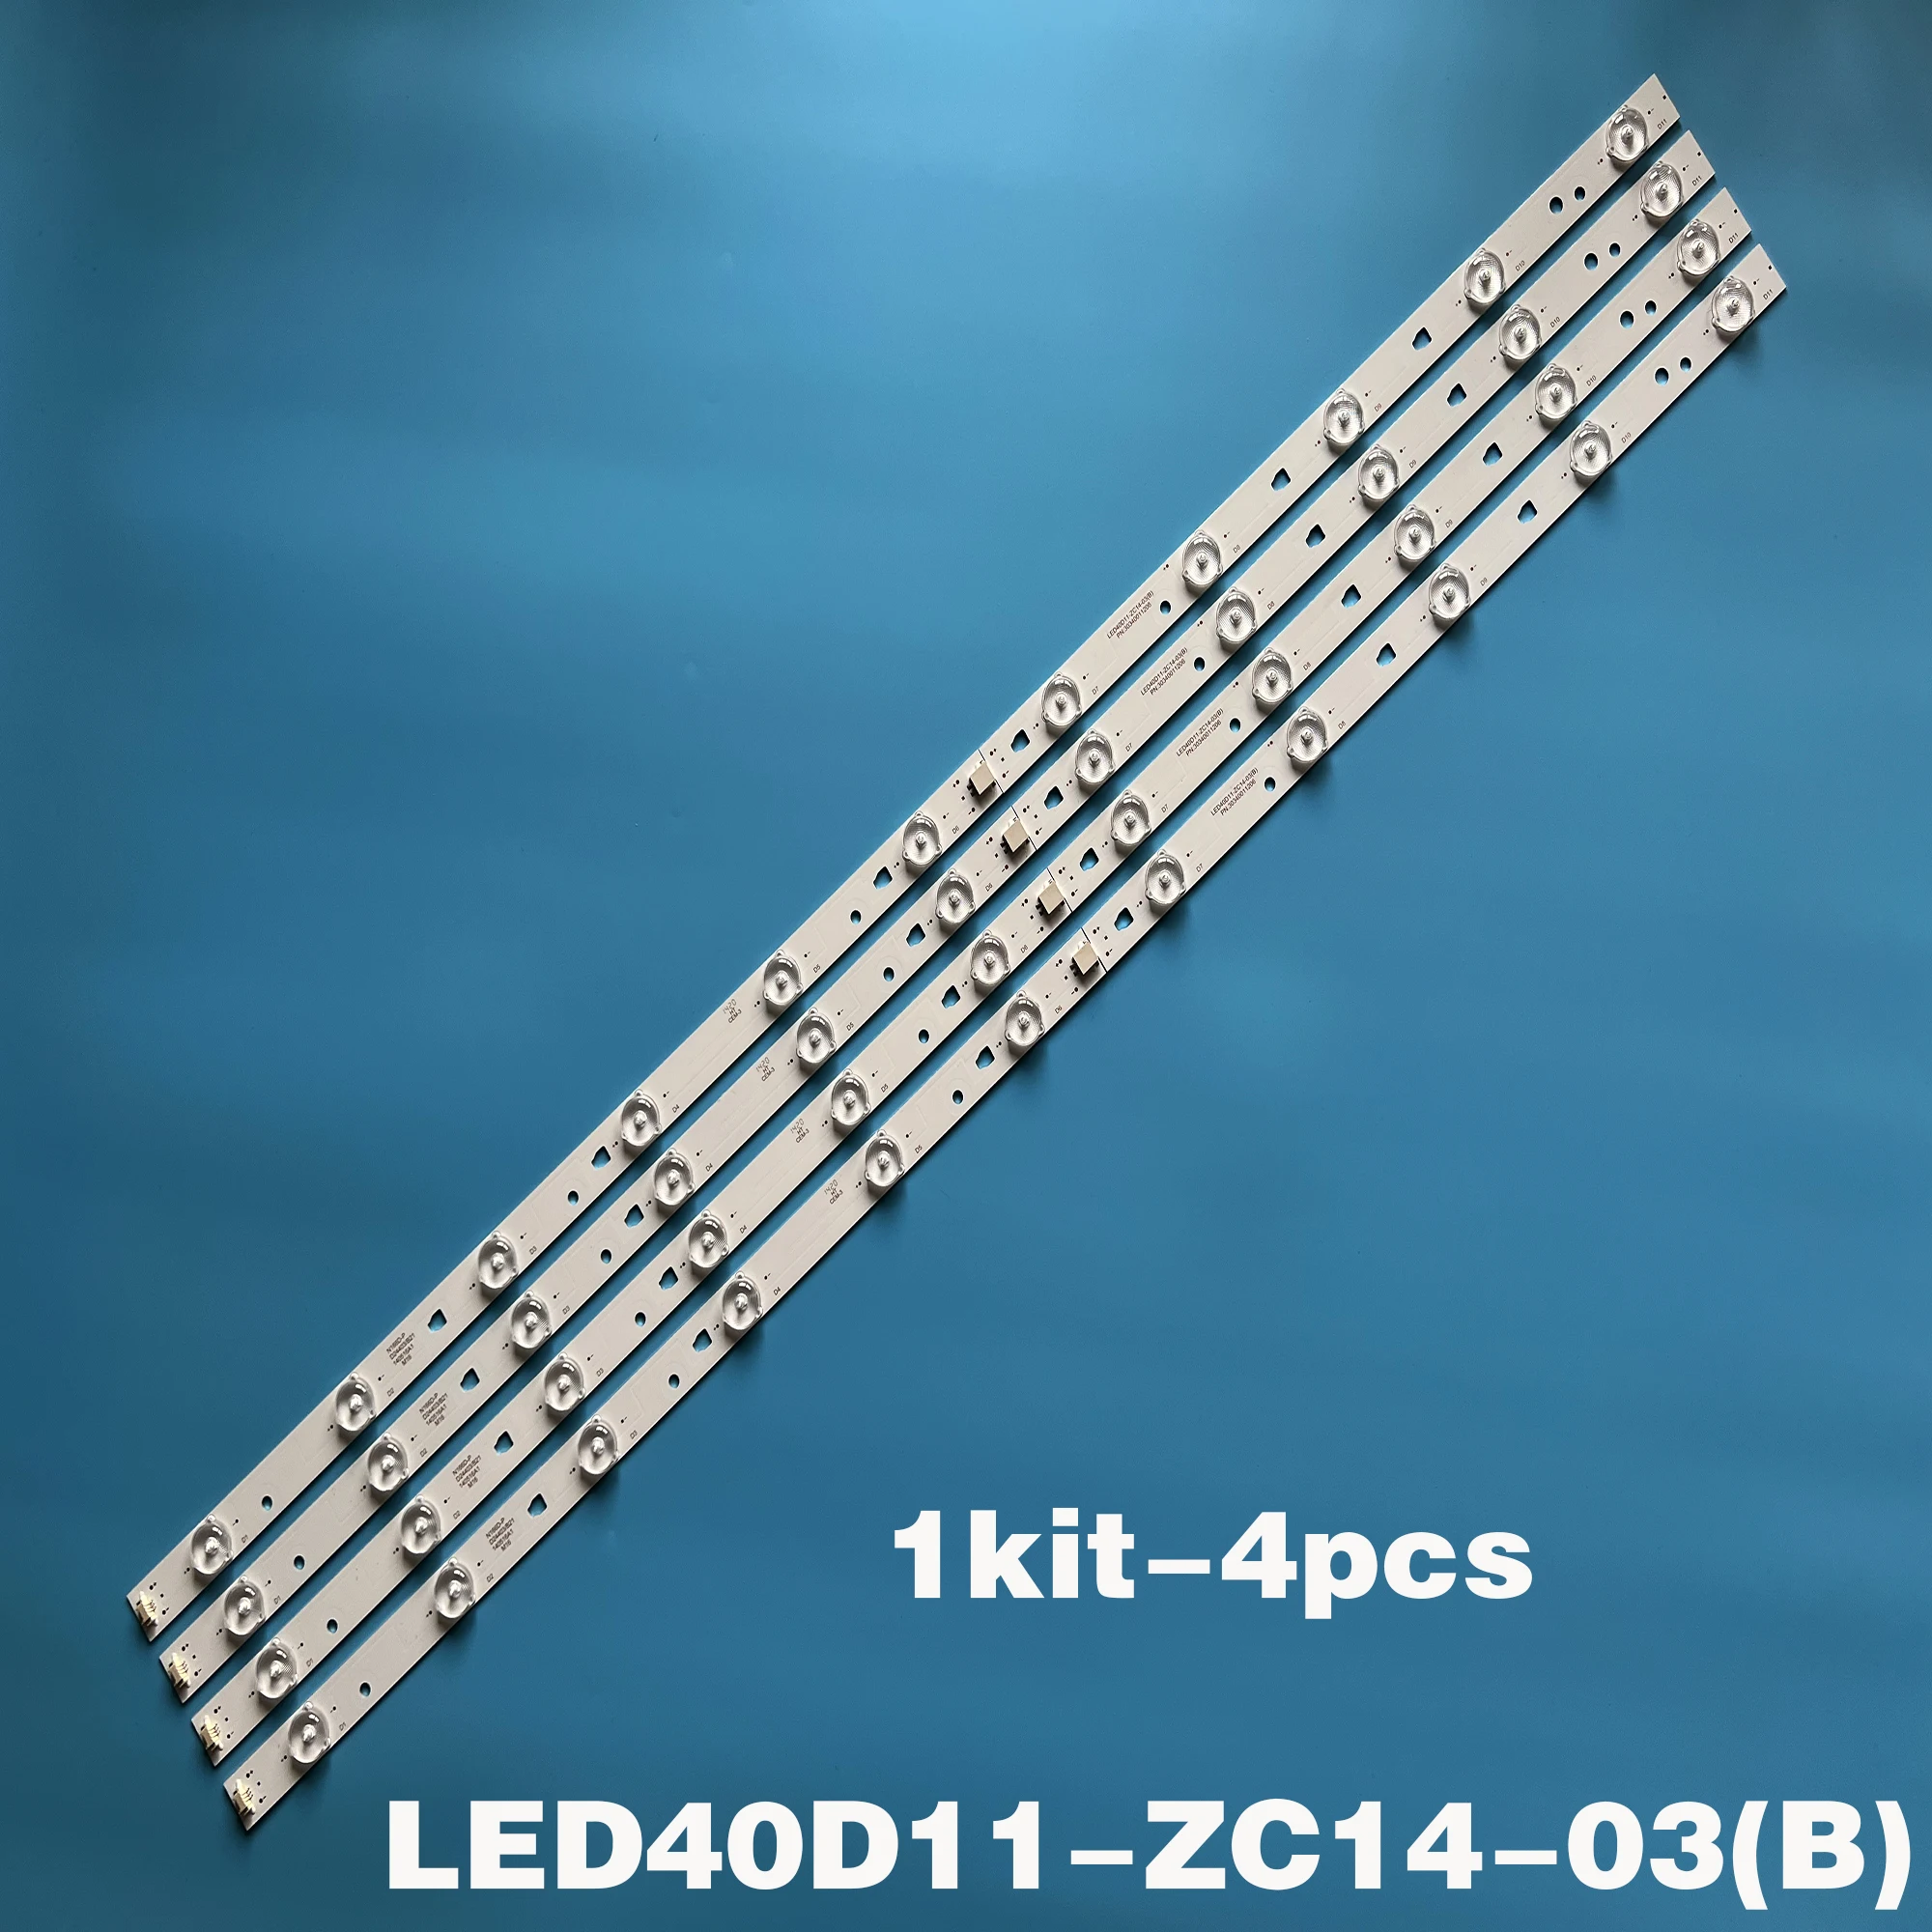 4PCS LED backlight for JVC LT-40M640 MTV-4128LTA2 LT-40C540 LSC400HN01 LT-40E71(A) LED40D11-ZC14-03(B) 11LED -